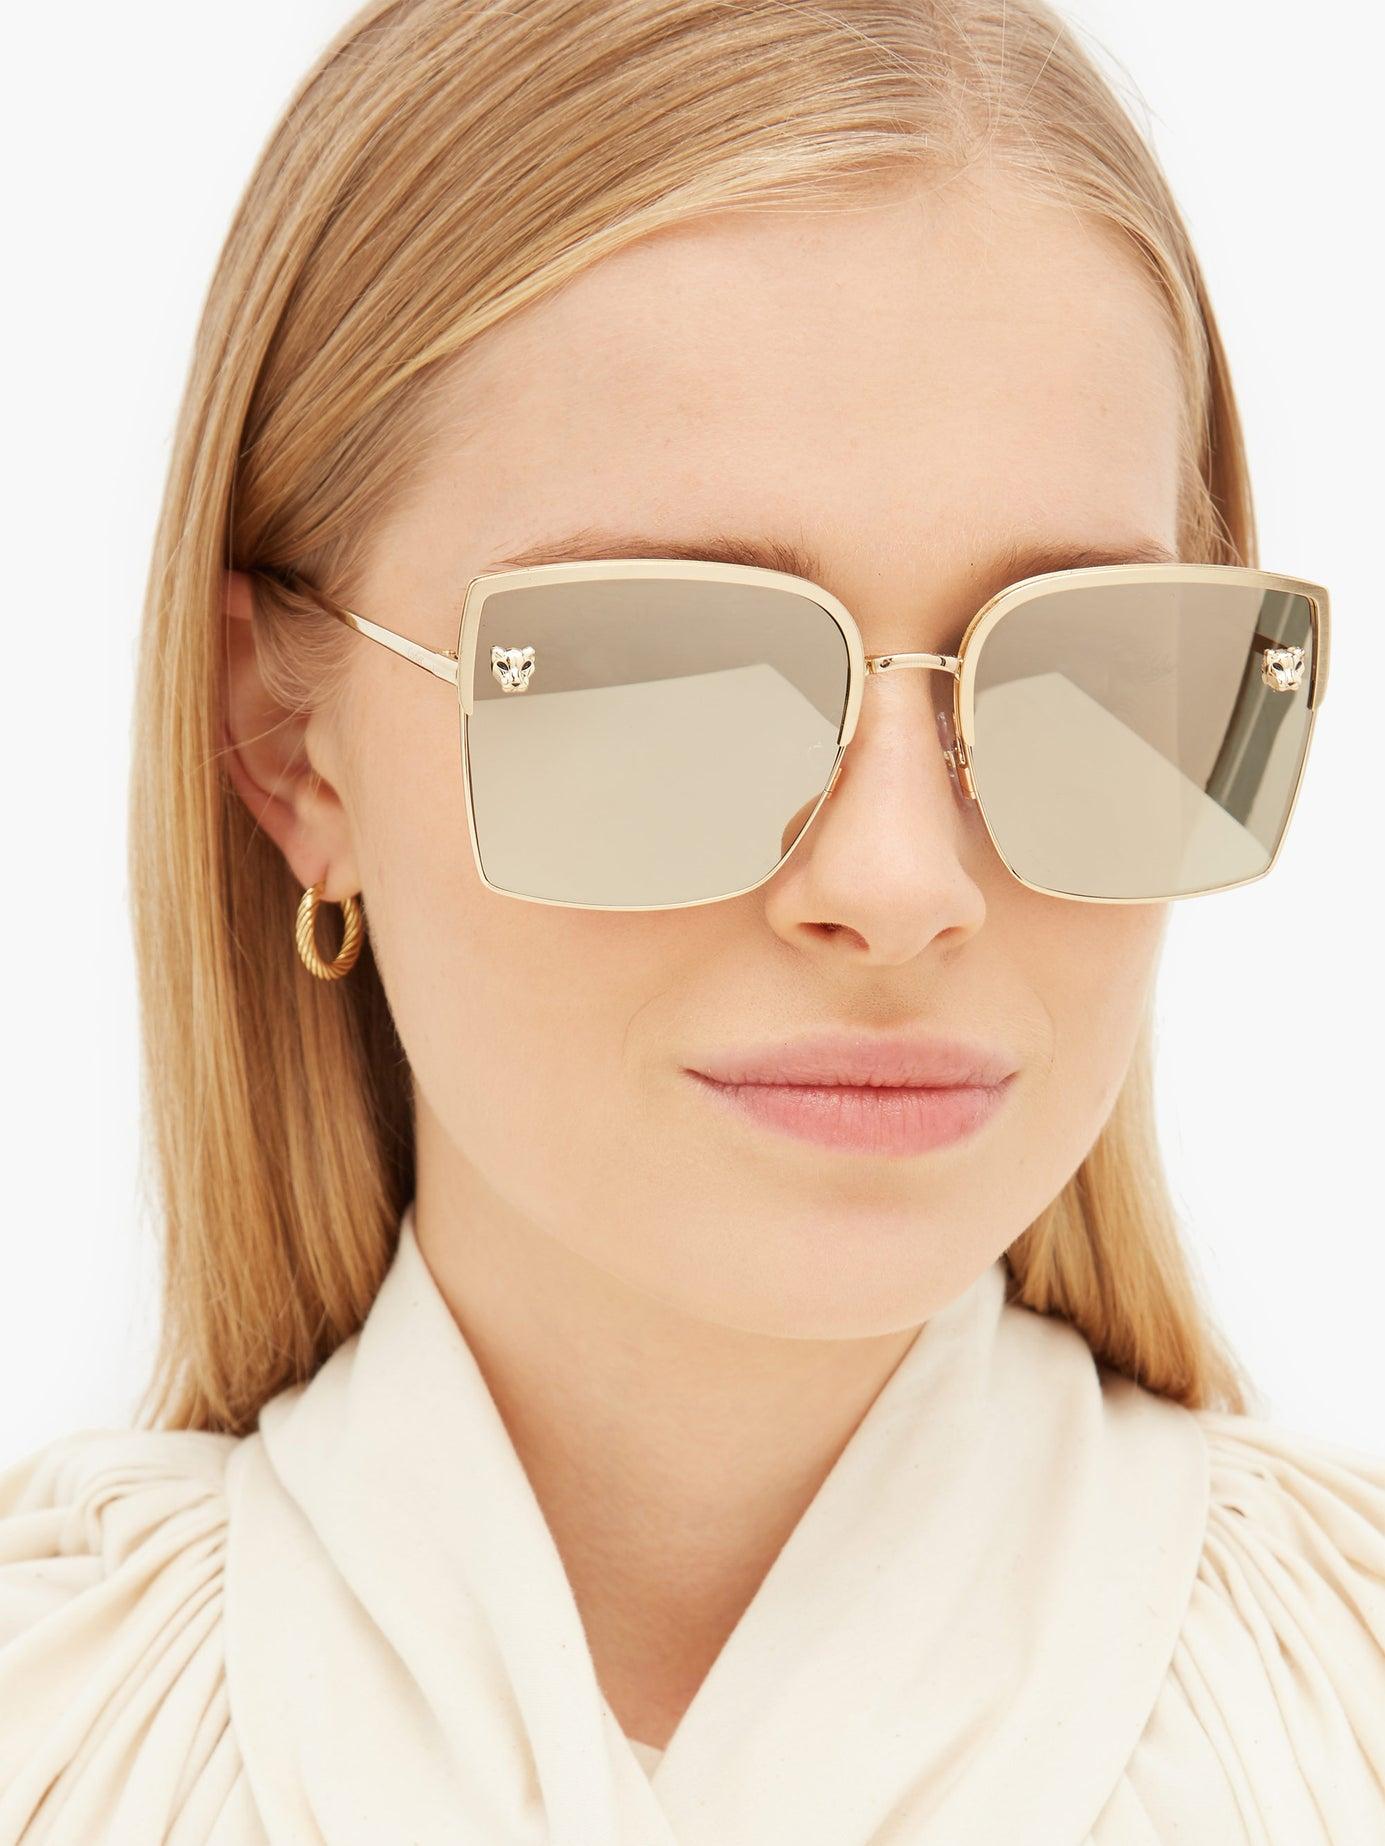 New Authentic Panthere de Cartier Sunglasses | Cartier sunglasses, Sunglasses  women, Colored sunglasses